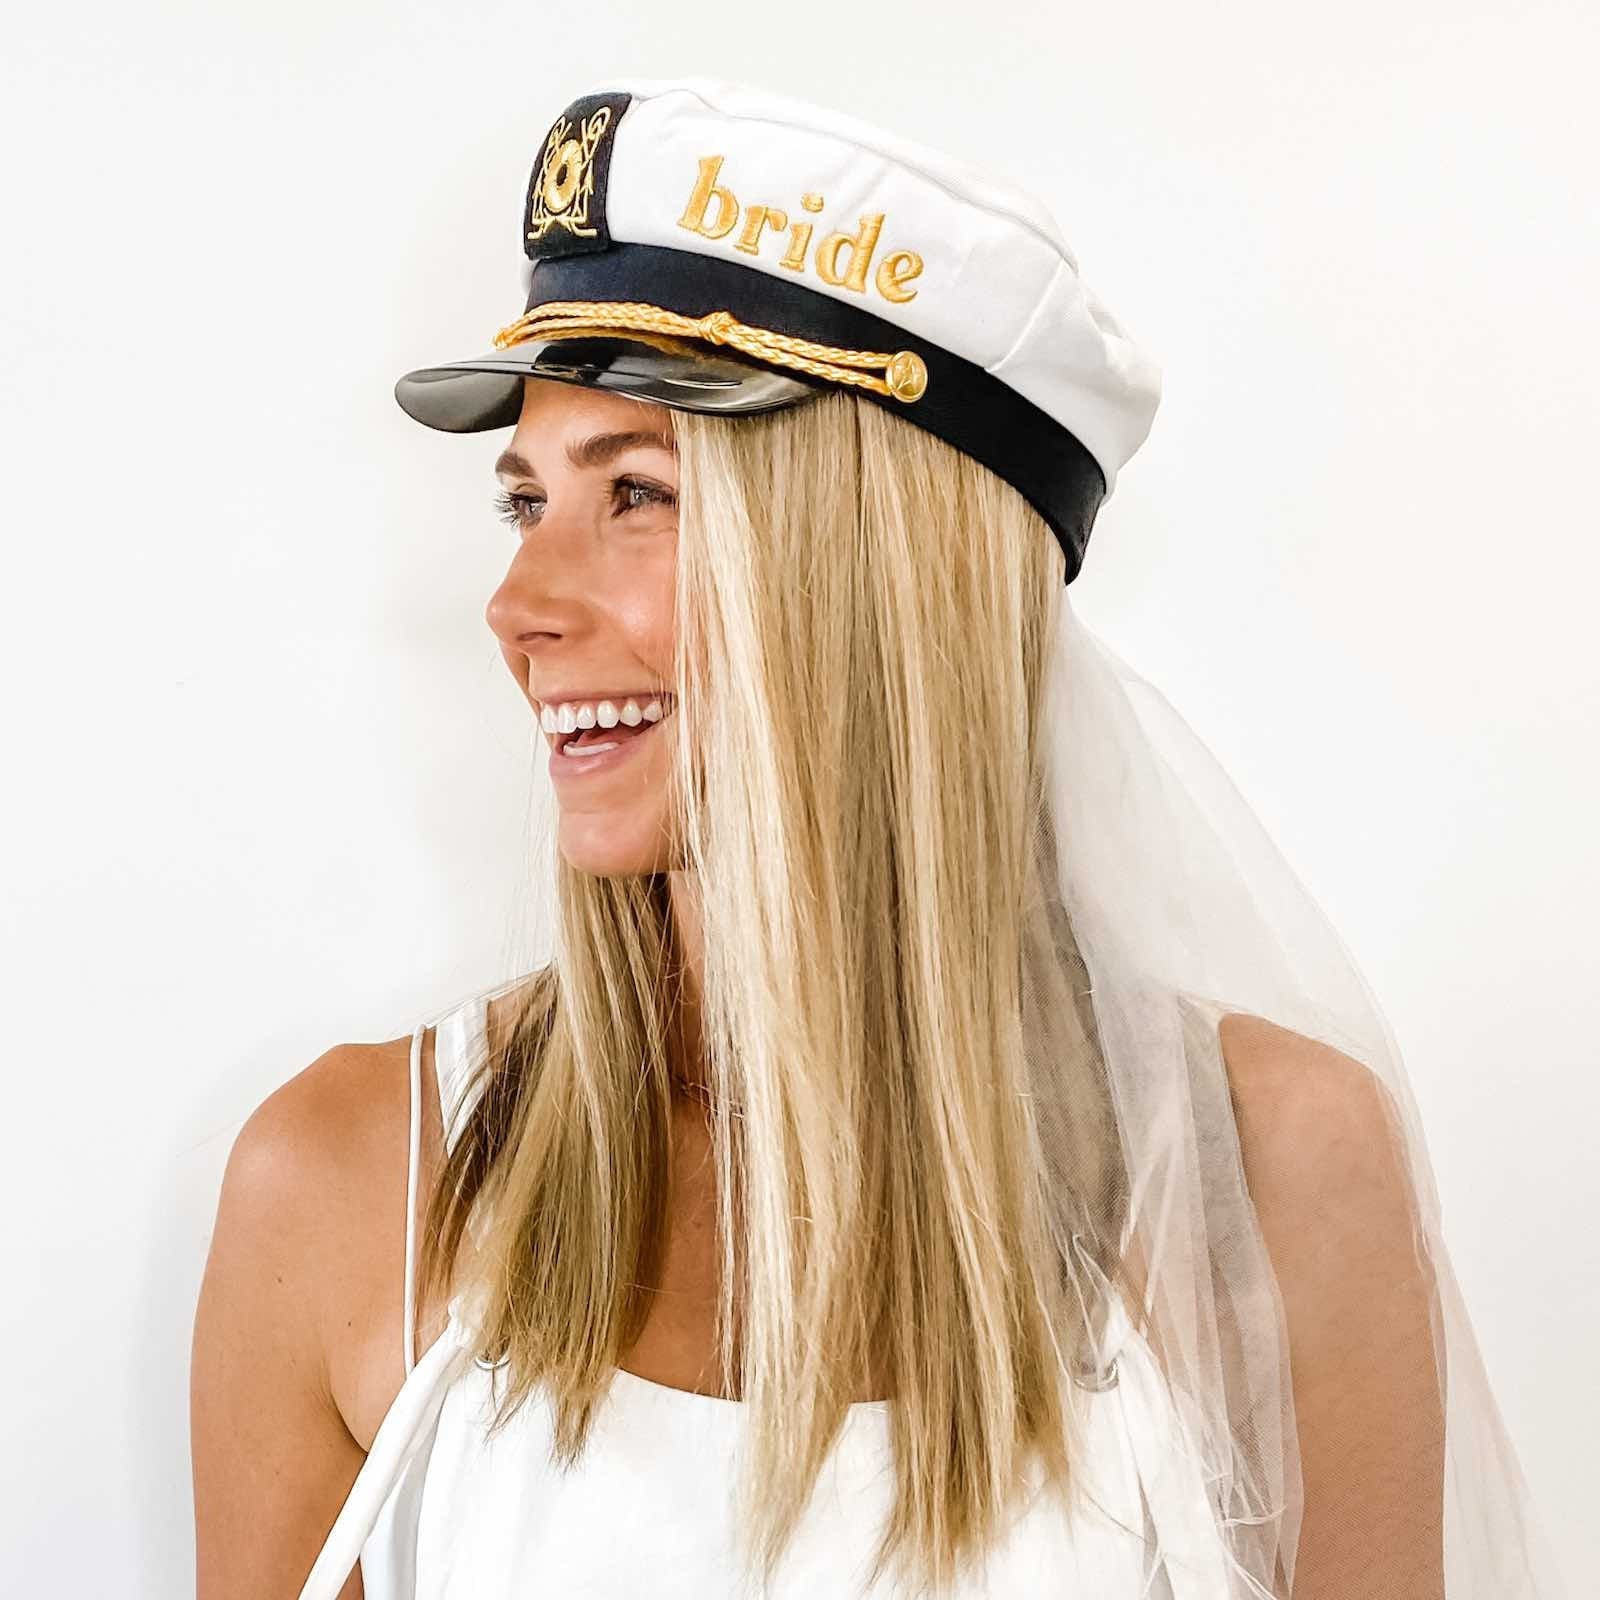 Captain Hat Men Women - Sailor Hat, Yacht Boat Captains Sailing Fishing 